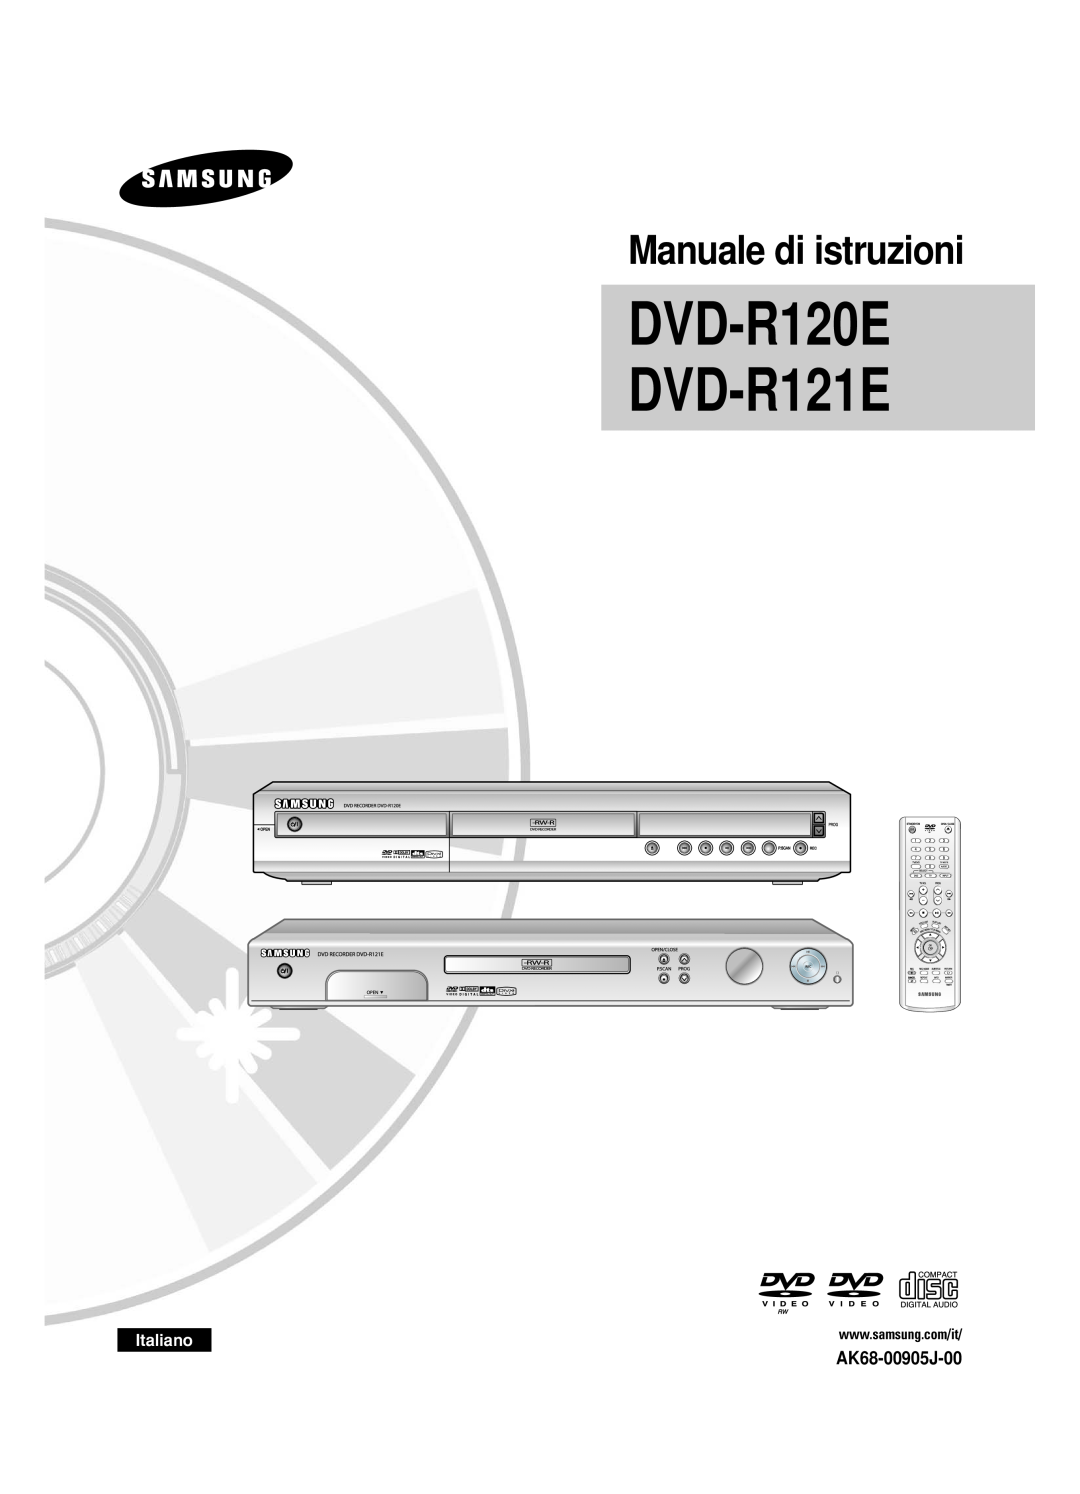 Samsung DVD-R120/AFS, DVD-R121E/XEG manual AK68-00905J-00, Italiano, DVD-R120E DVD-R121E, Manuale di istruzioni 